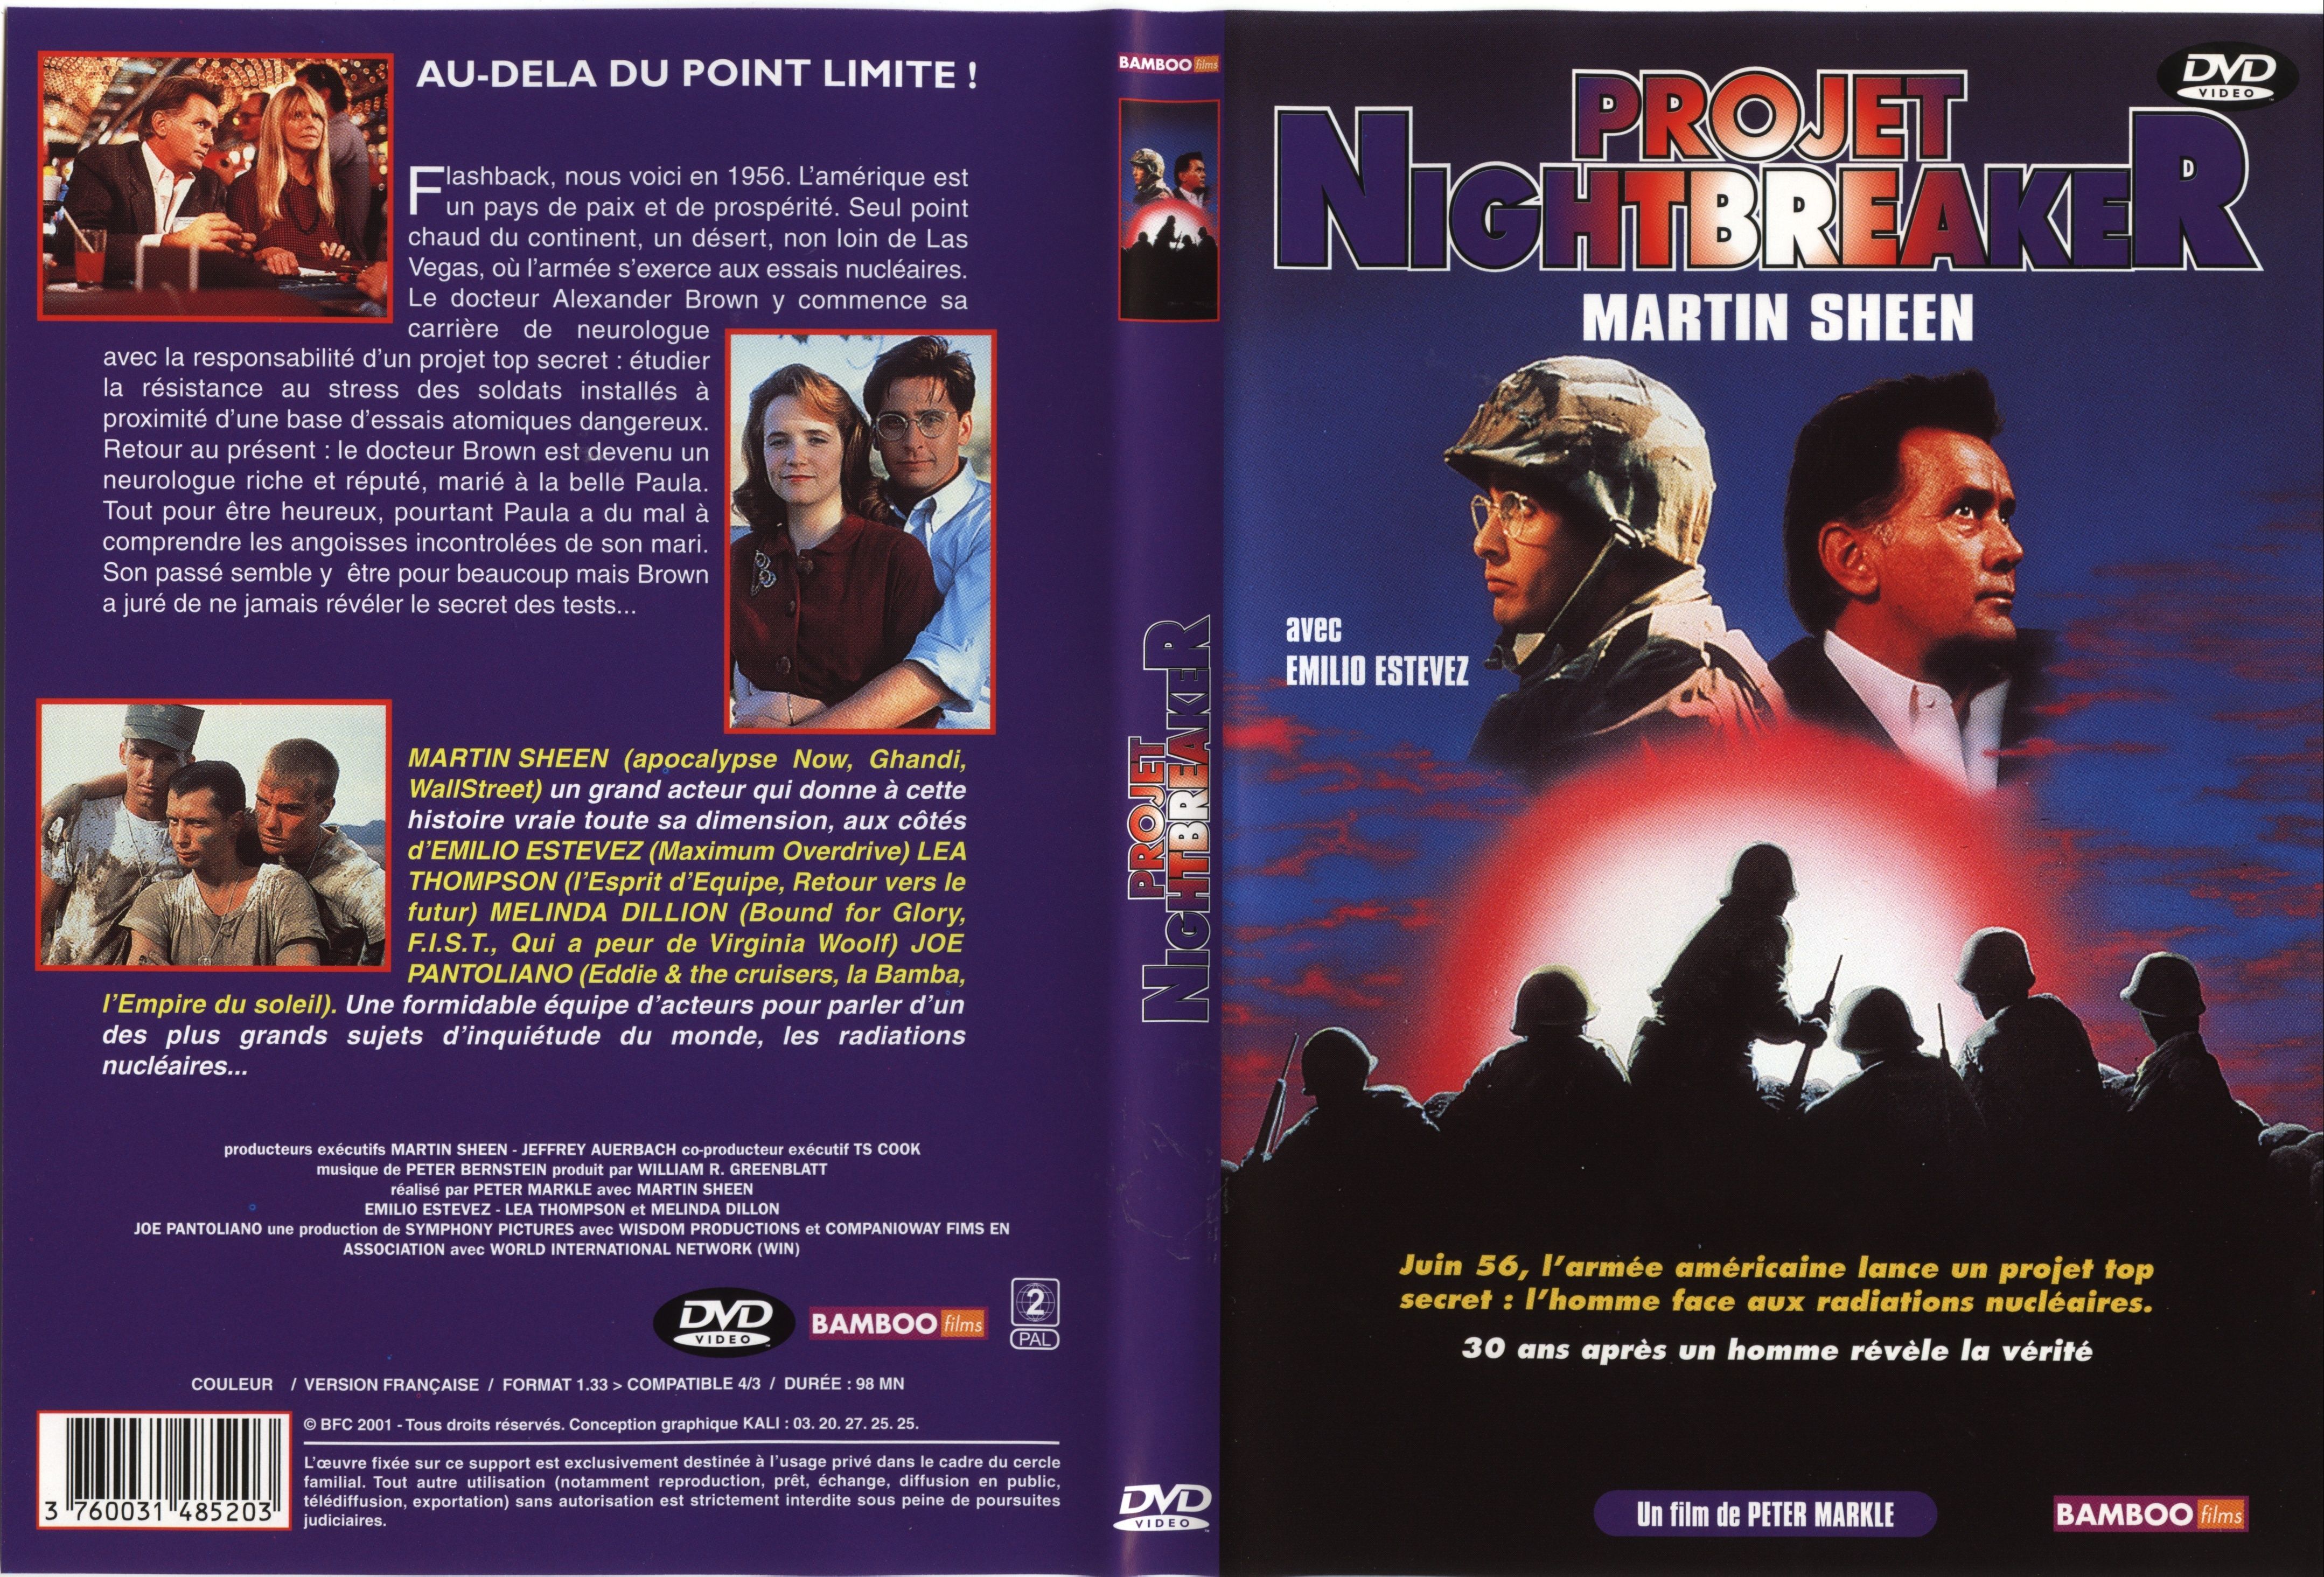 Jaquette DVD Projet Nightbreaker